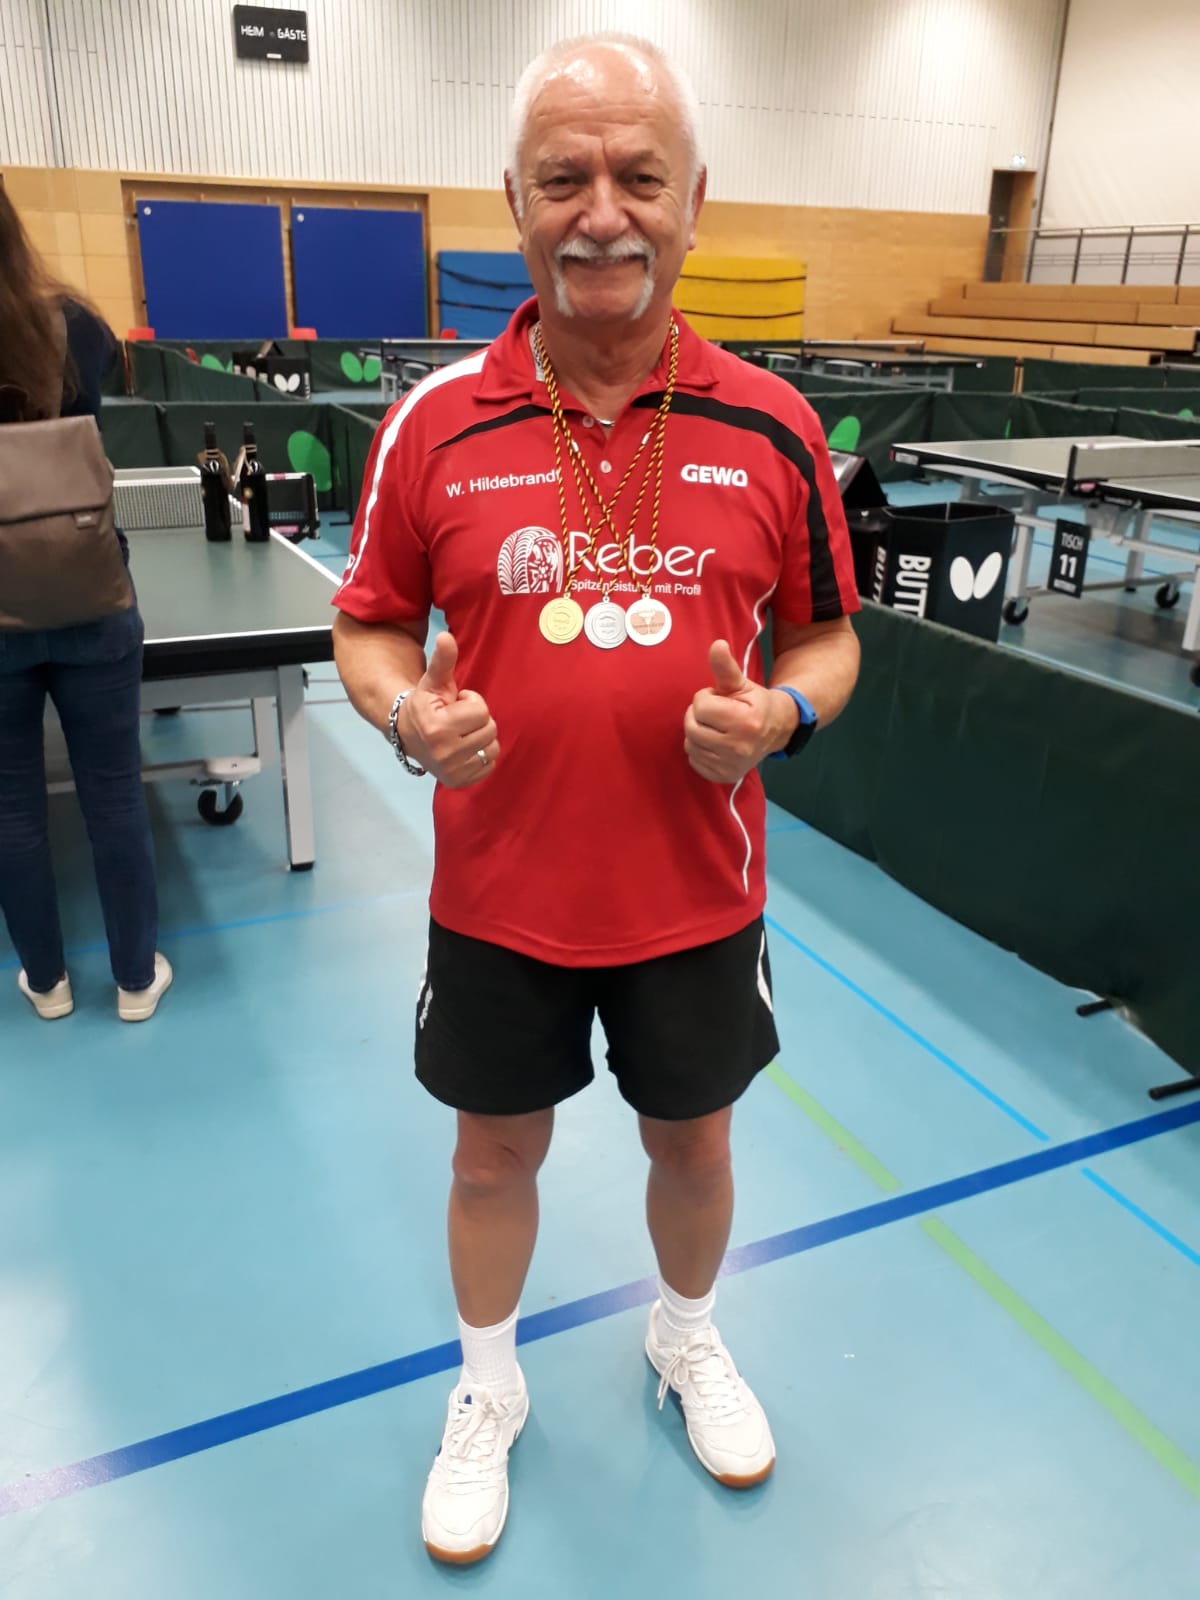 Daumen drücken für "Brett" bei den Deutschen Senioren-Meisterschaften in Erfurt am 08.06/09.06.2019